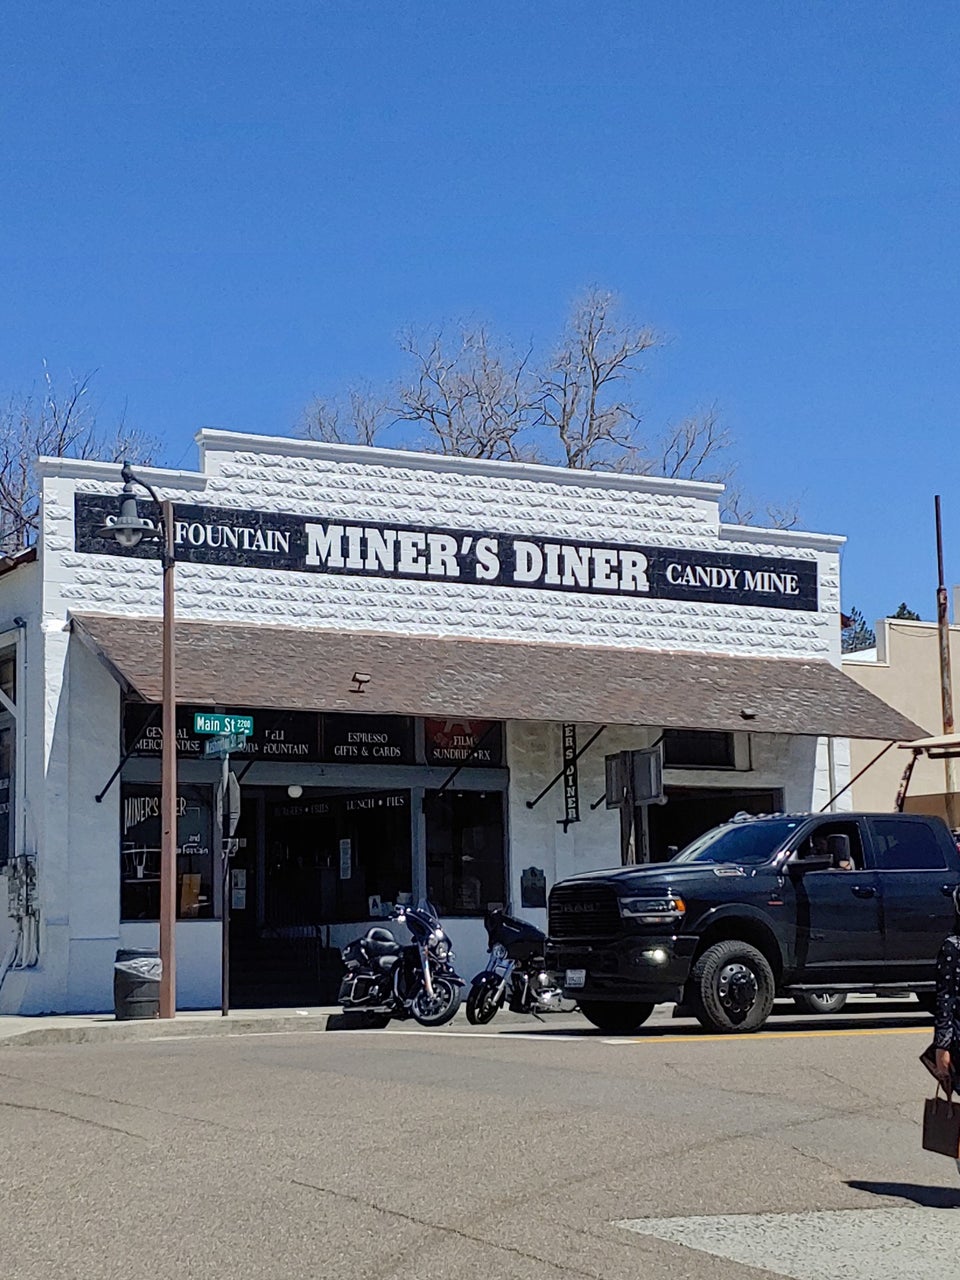 Miner's Diner